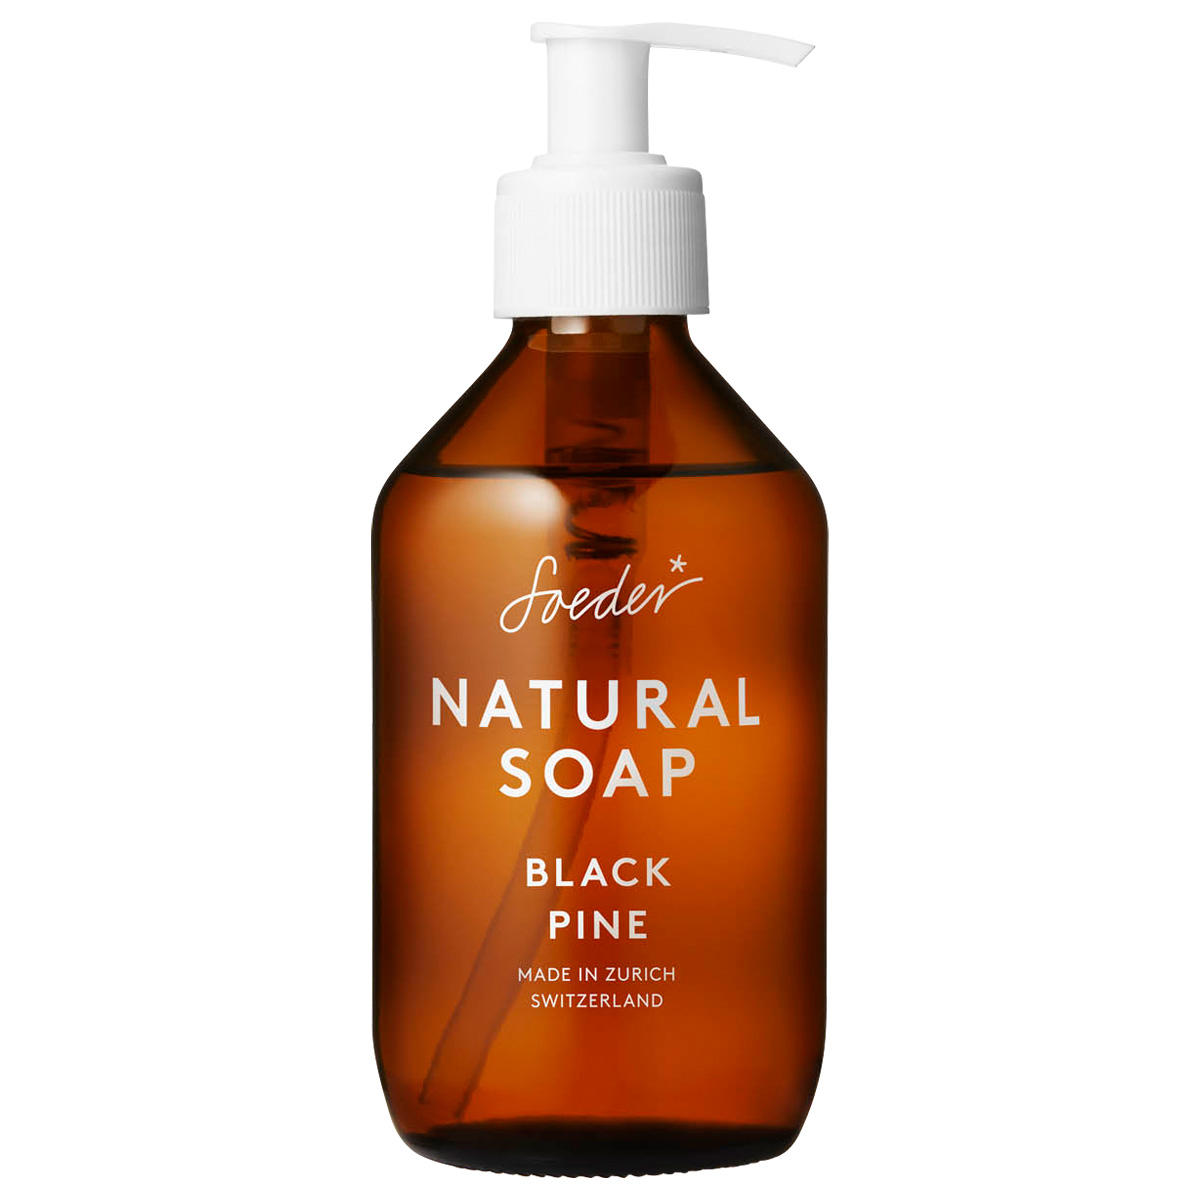 Soeder Natural Soap Black Pine  - 1